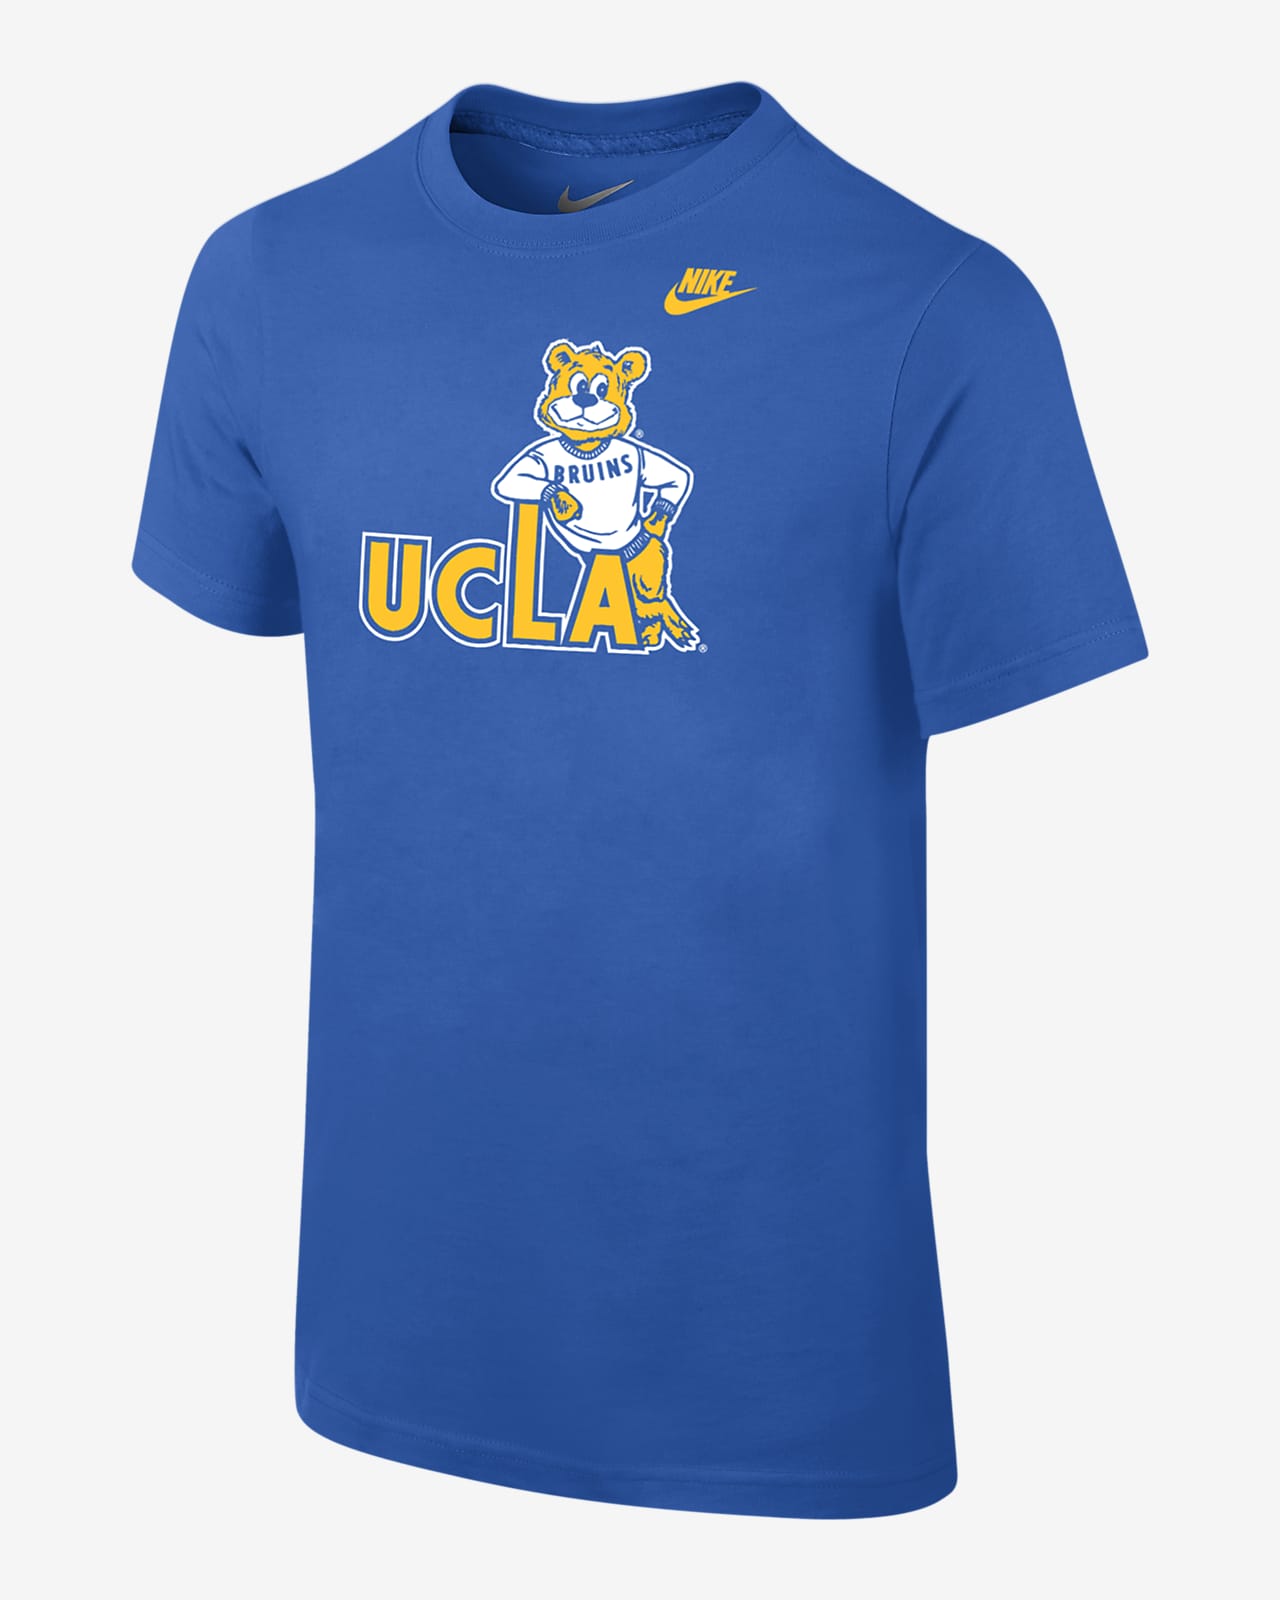 Playera universitaria Nike para niño talla grande UCLA